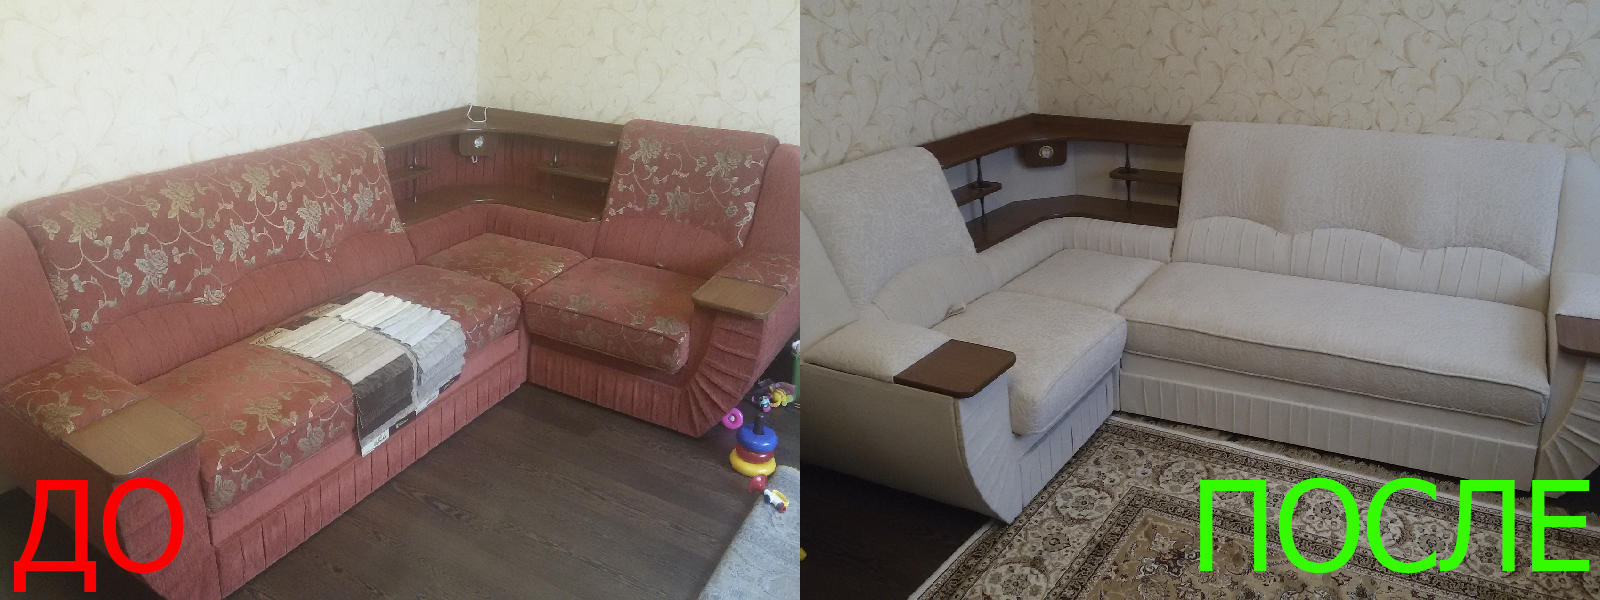 Обшивка мягкой мебели в Краснодаре по разумной стоимости, высокое качество тканей